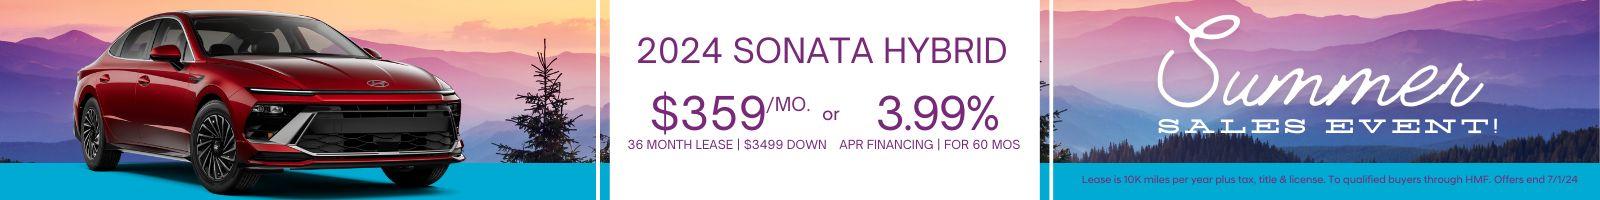 2024 sonata hybrid